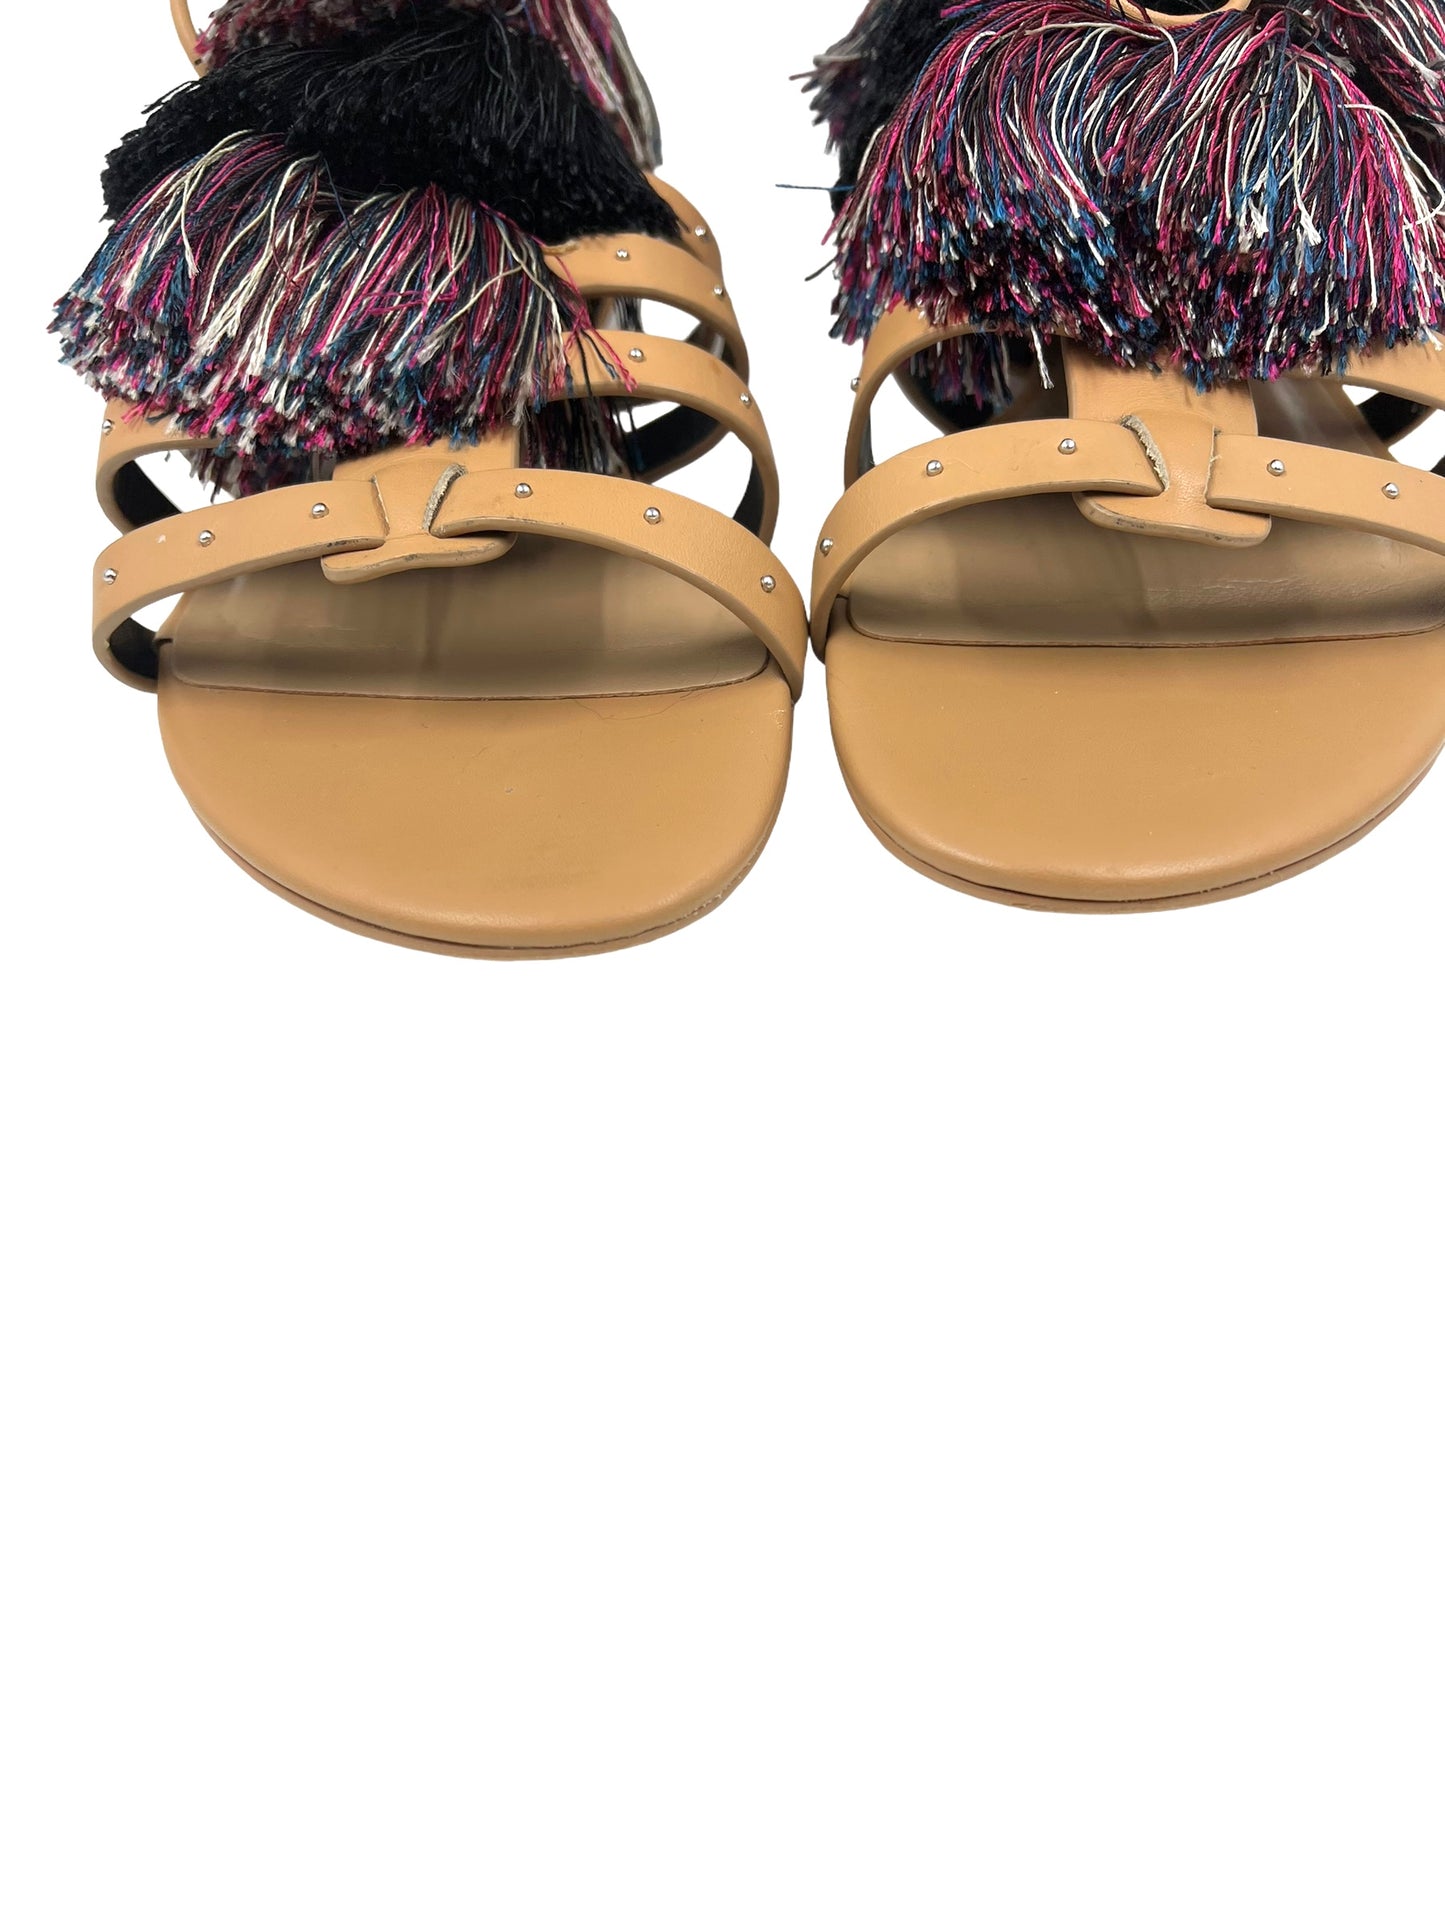 Rebecca Minkoff Size 9 'Eve' Leather Gladiator Tassel Pom Pom Sandals